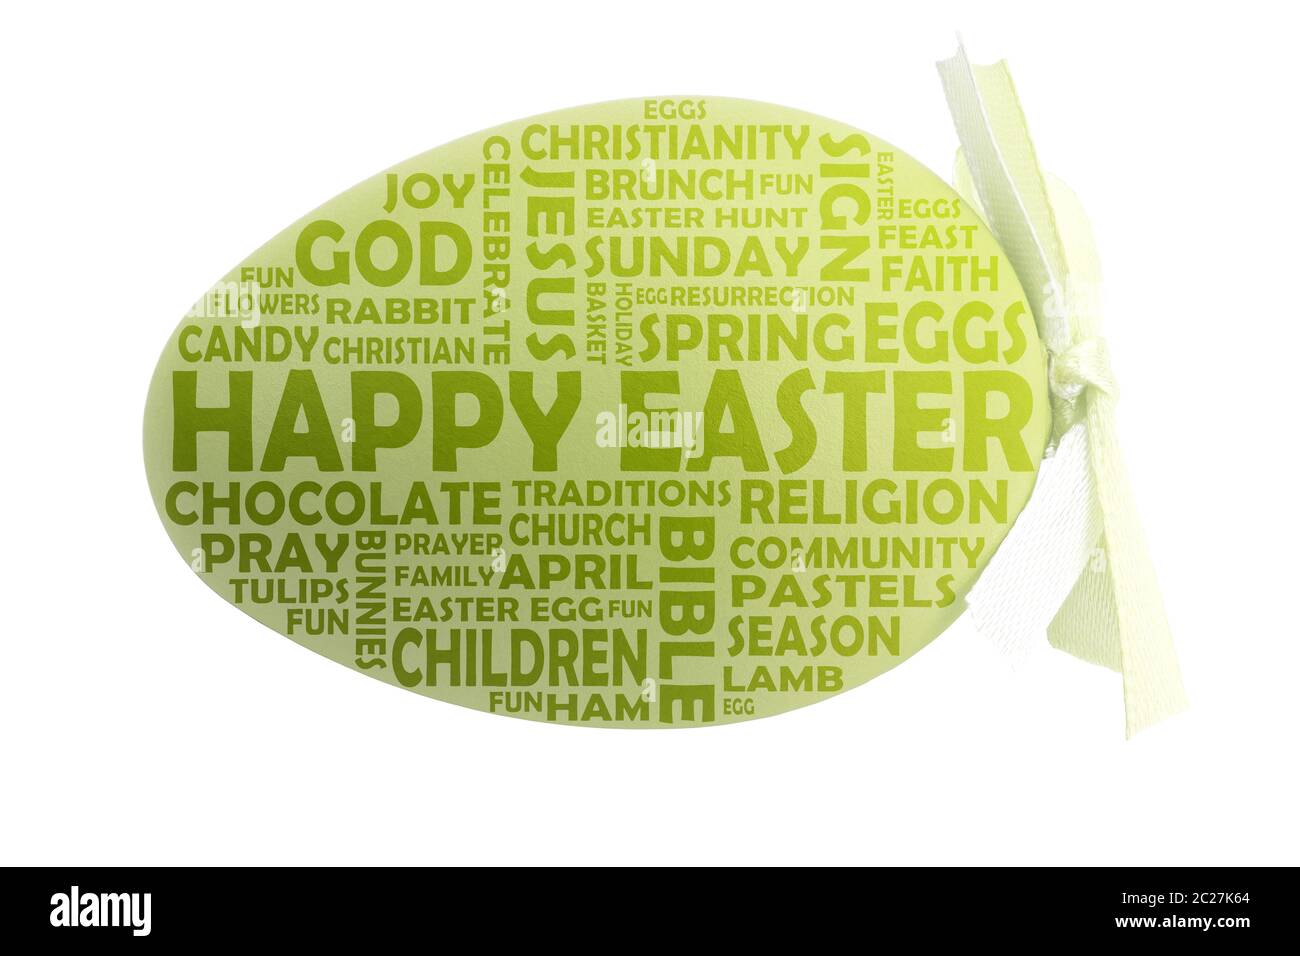 Nuage de mots joyeuses Pâques avec des mots clés pertinents mis en évidence sur un oeuf de pâques vert Banque D'Images